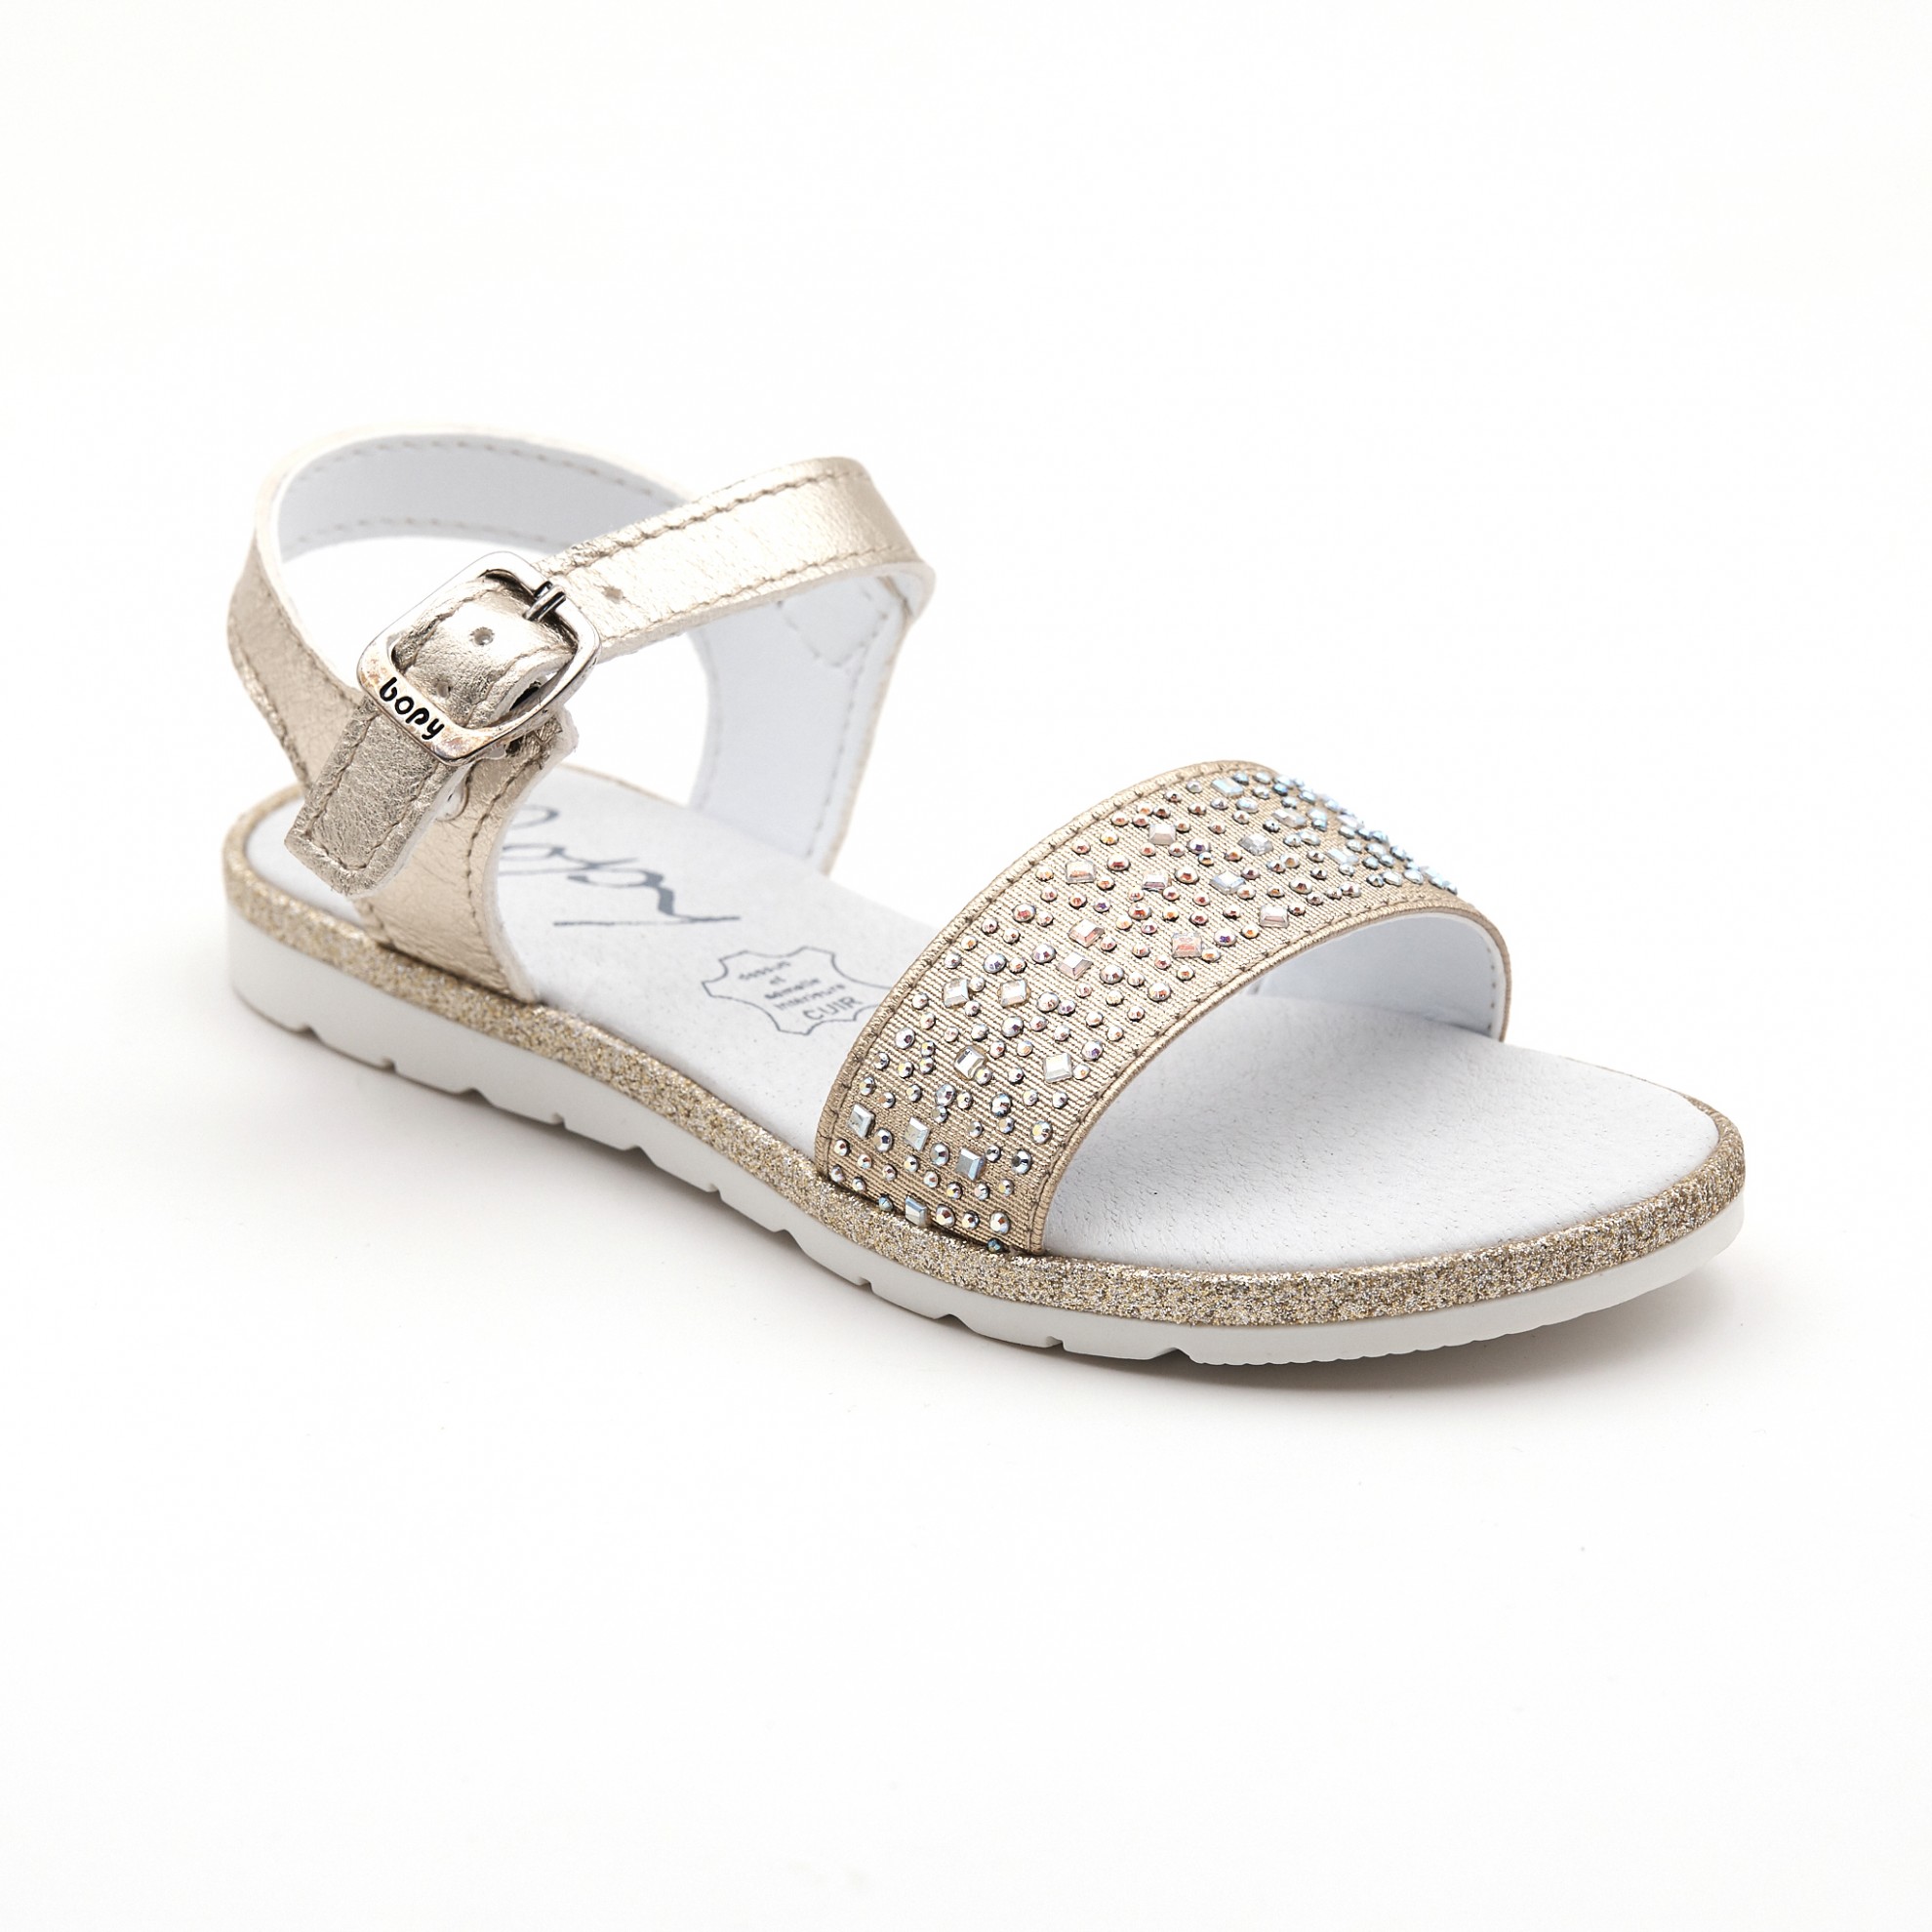 Sandale elegante aurii cu pietricele | Minipas